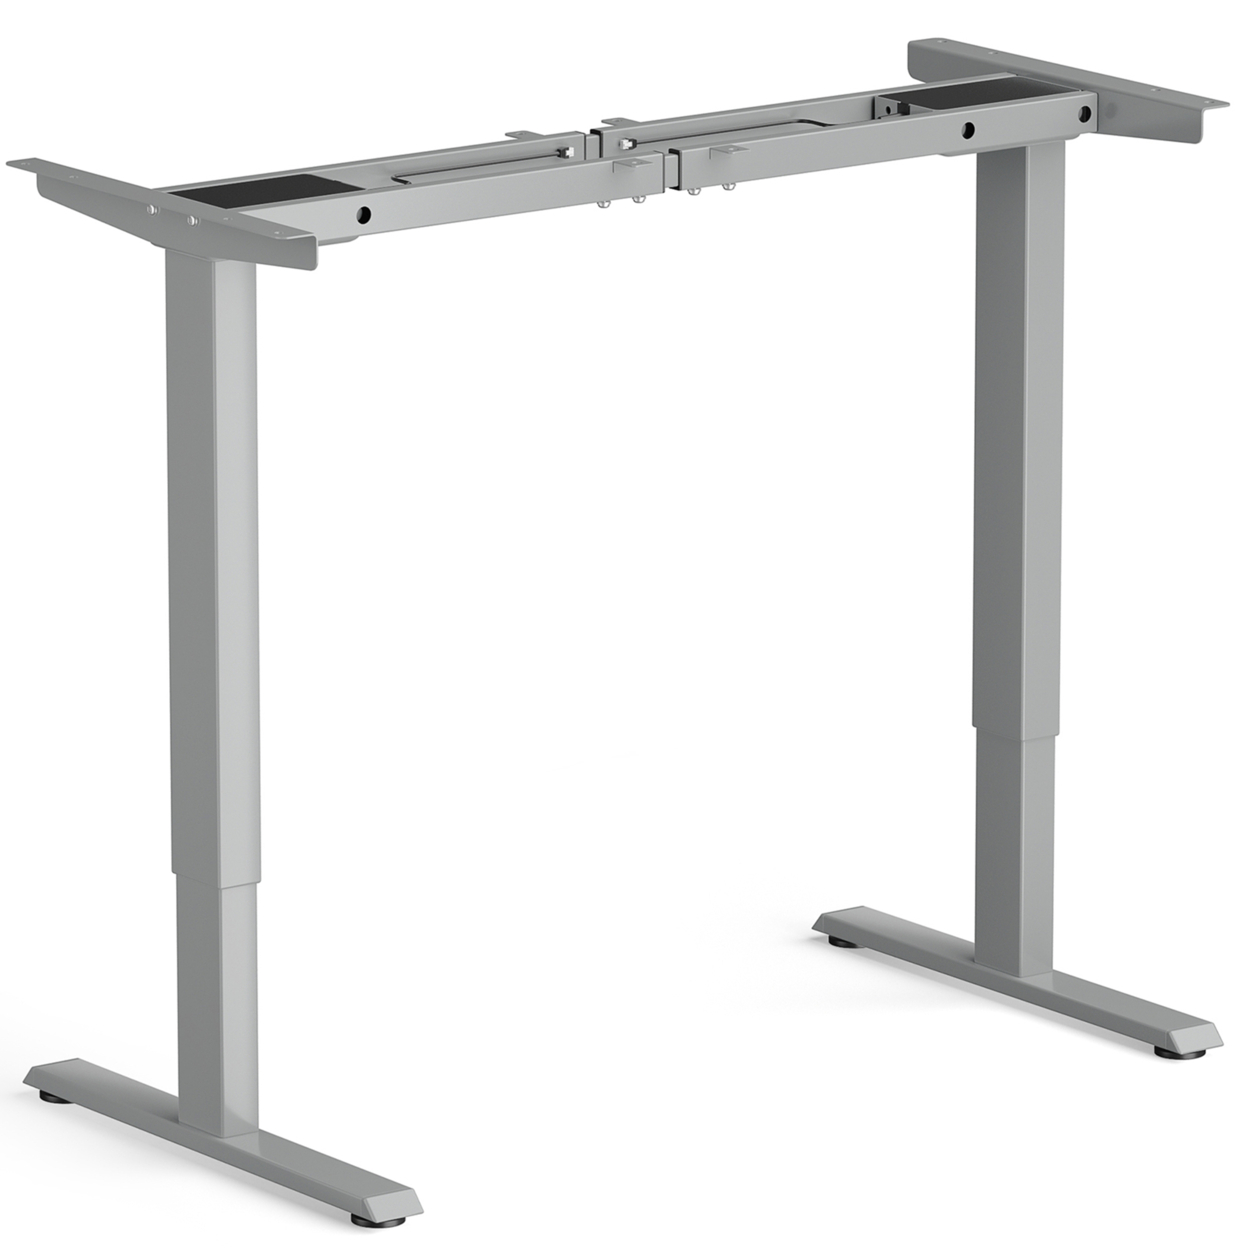 Dual-Motor Stand Up Desk Frame Workstation Base W/ Adjustable Width & Height - Grey